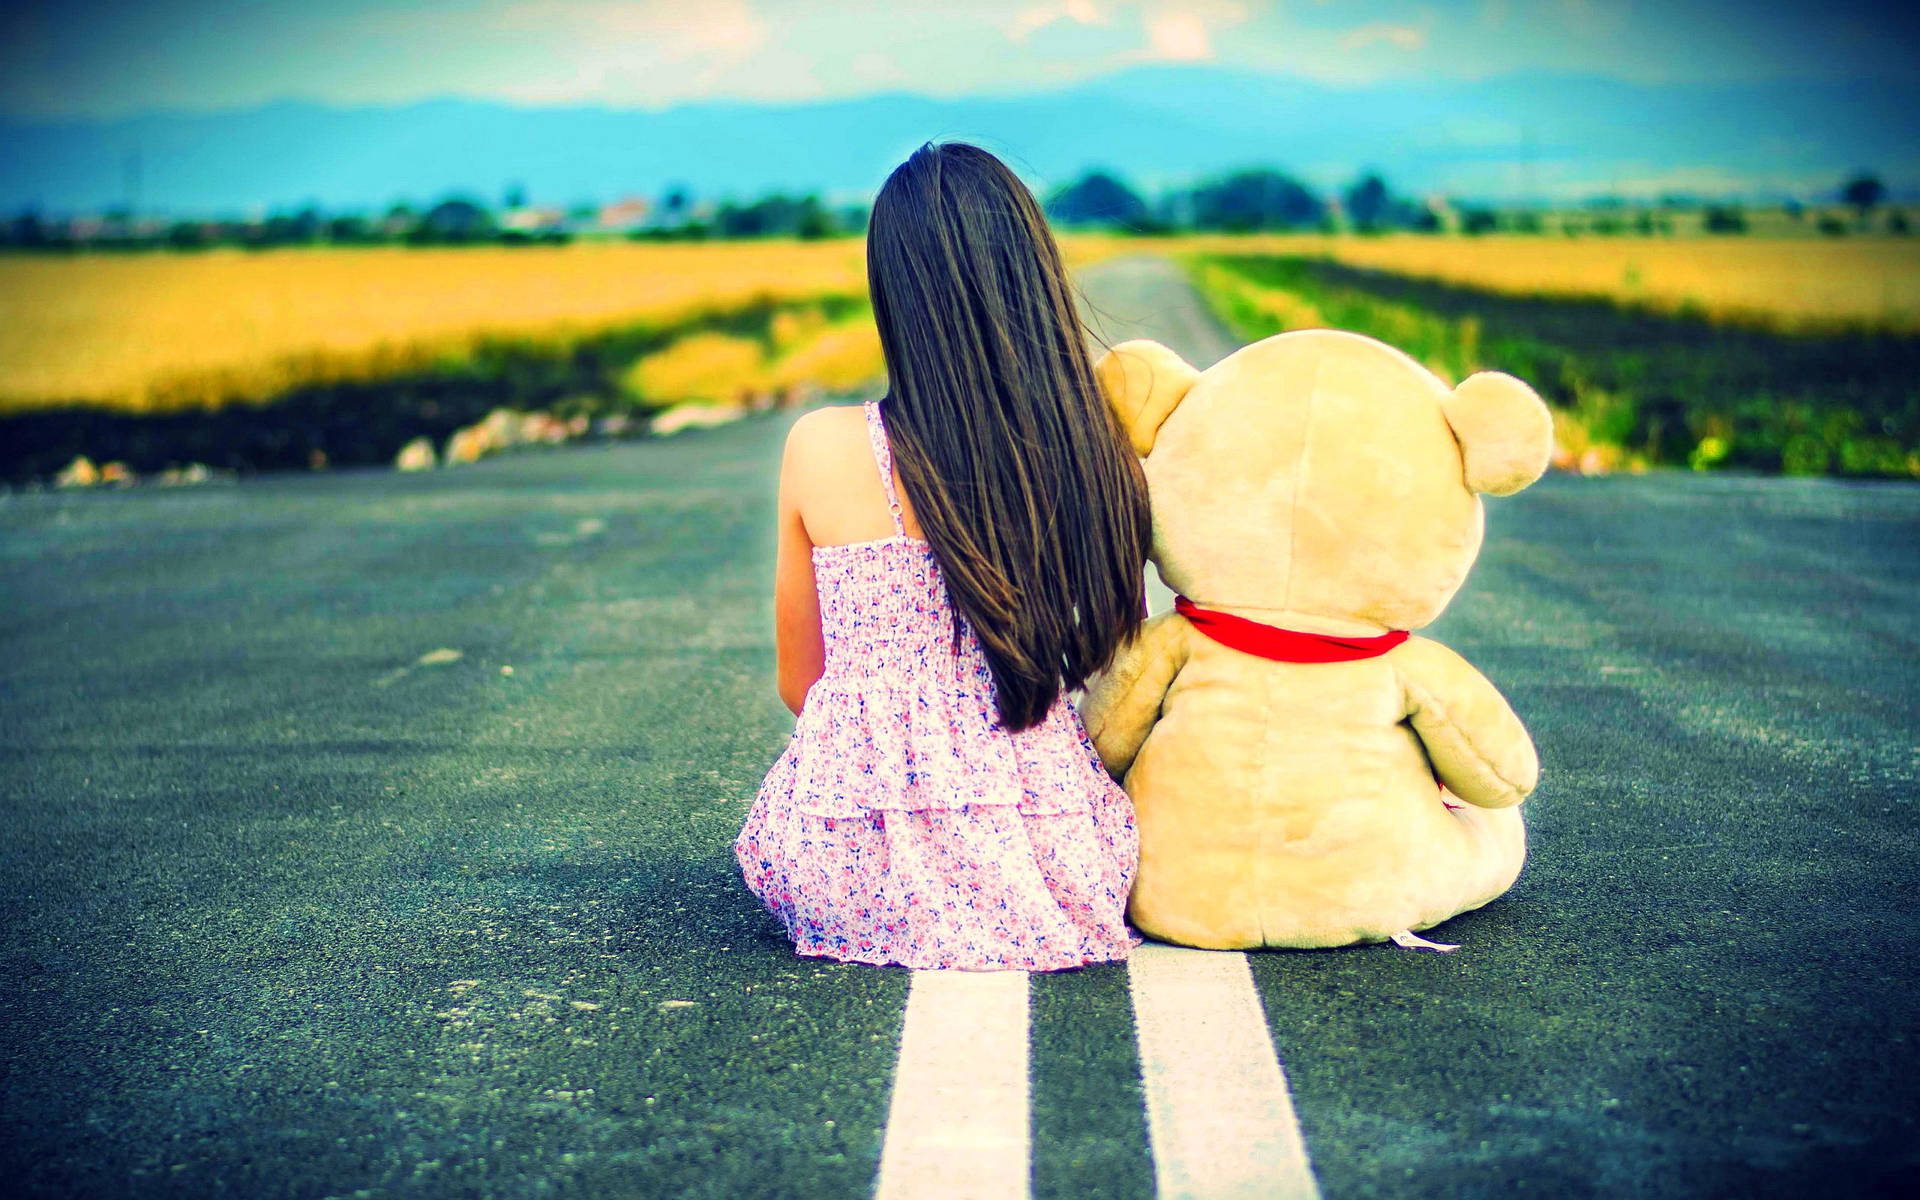 Sad Girl With Teddy Bear